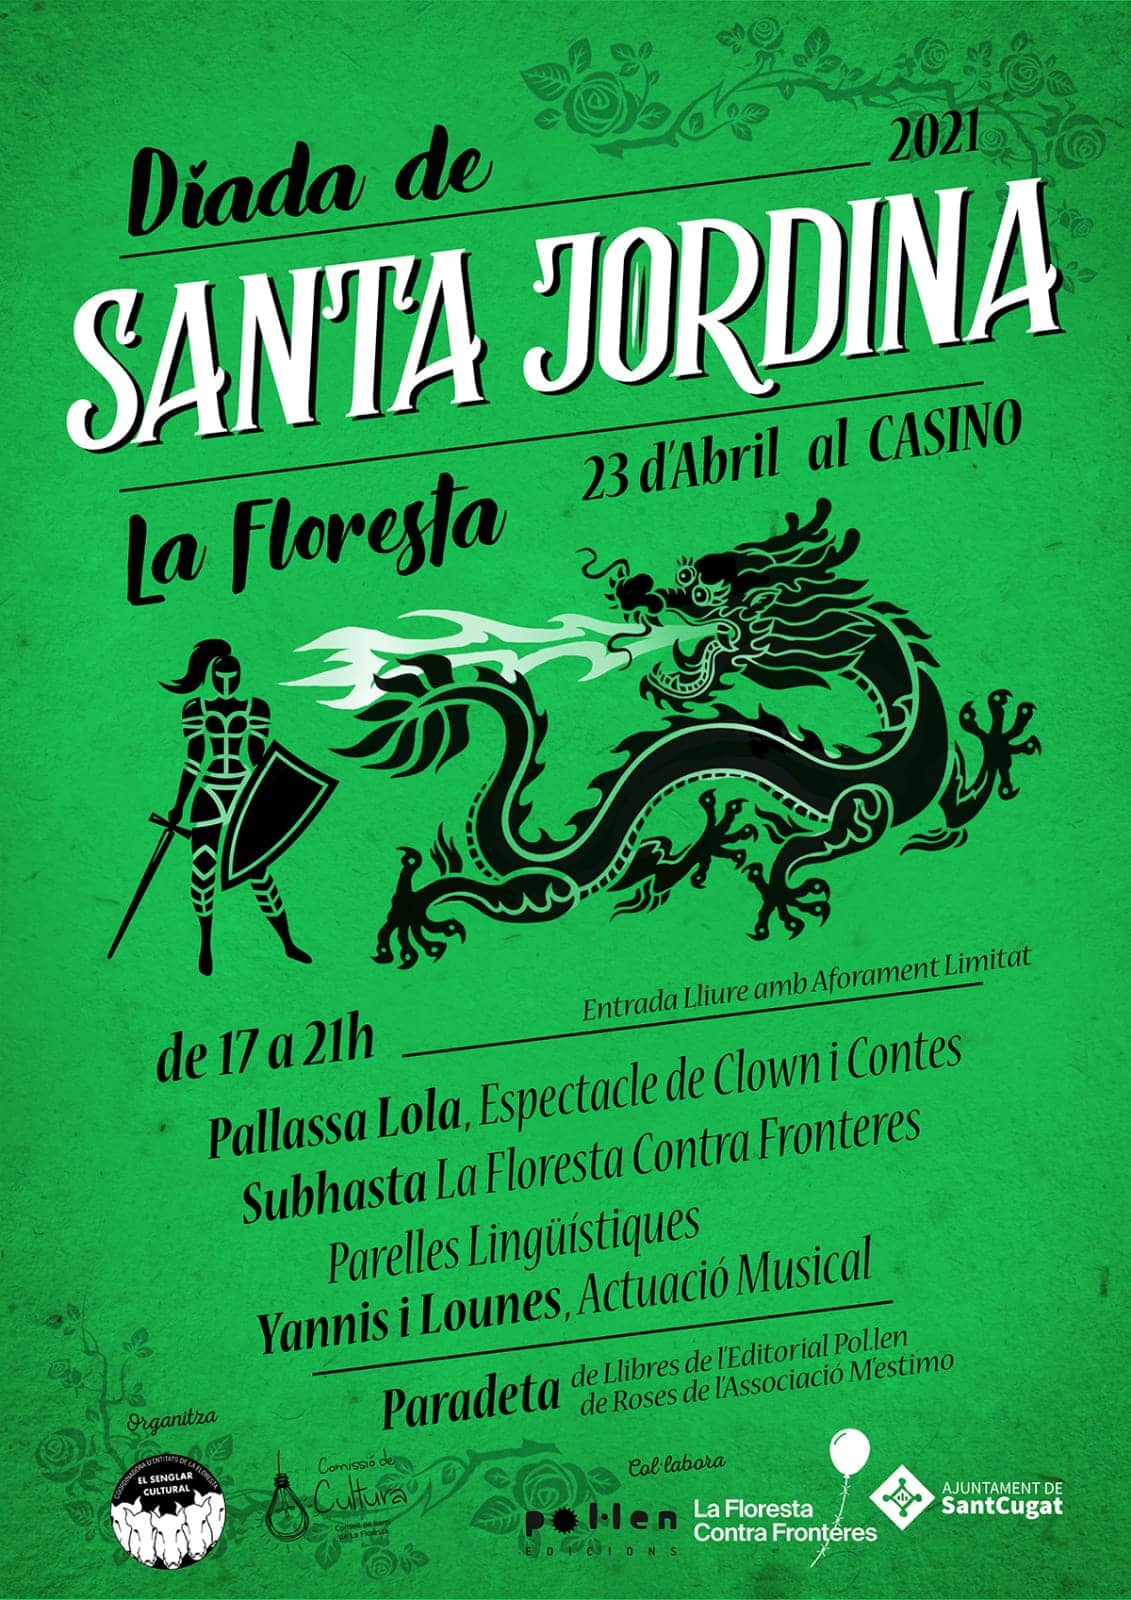 Díada de Santa Jordina en el Casino de La Floresta